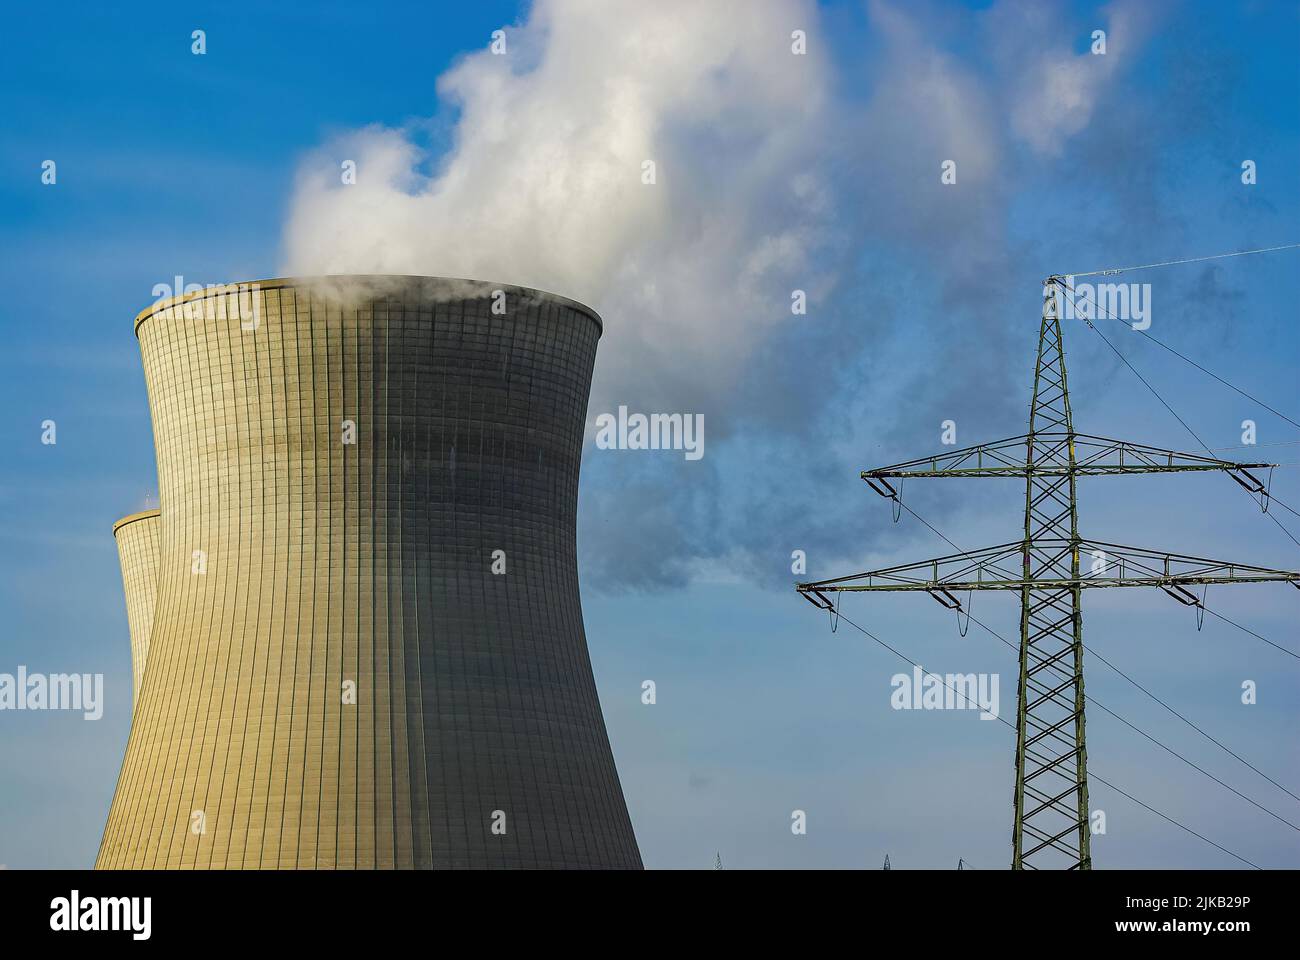 Kühlturm eines Wärmekraftwerks am Beispiel des Atomkraftwerks Gundremmingen, Bayern, Deutschland. Cooling tower of a thermal power plant using the exa Stock Photo